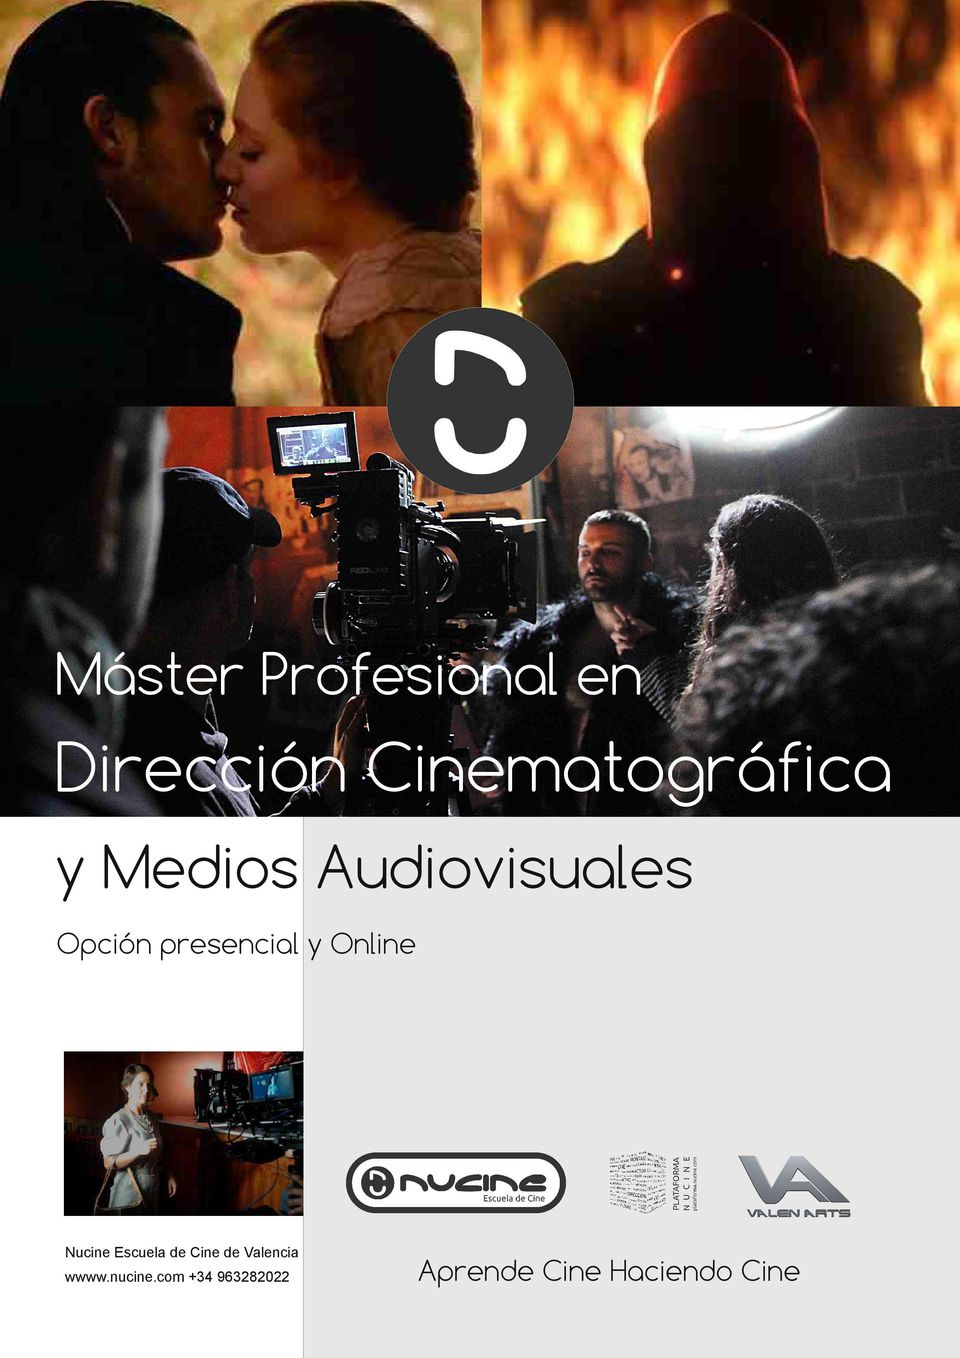 Online Nucine Escuela de Cine de Valencia wwww.